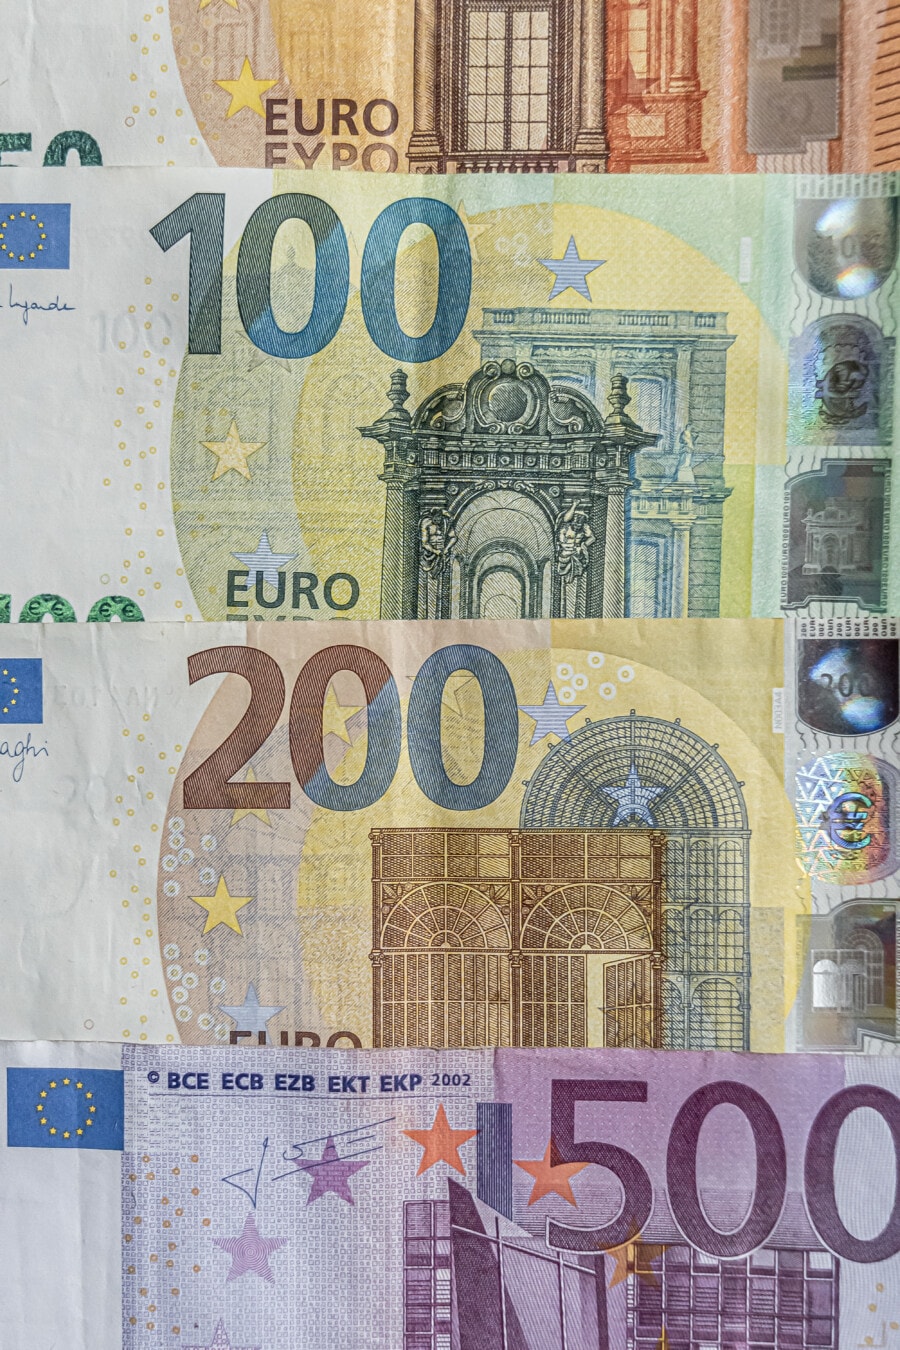 Cierre de billetes de papel moneda en euros (€50, €100, €200, €500)